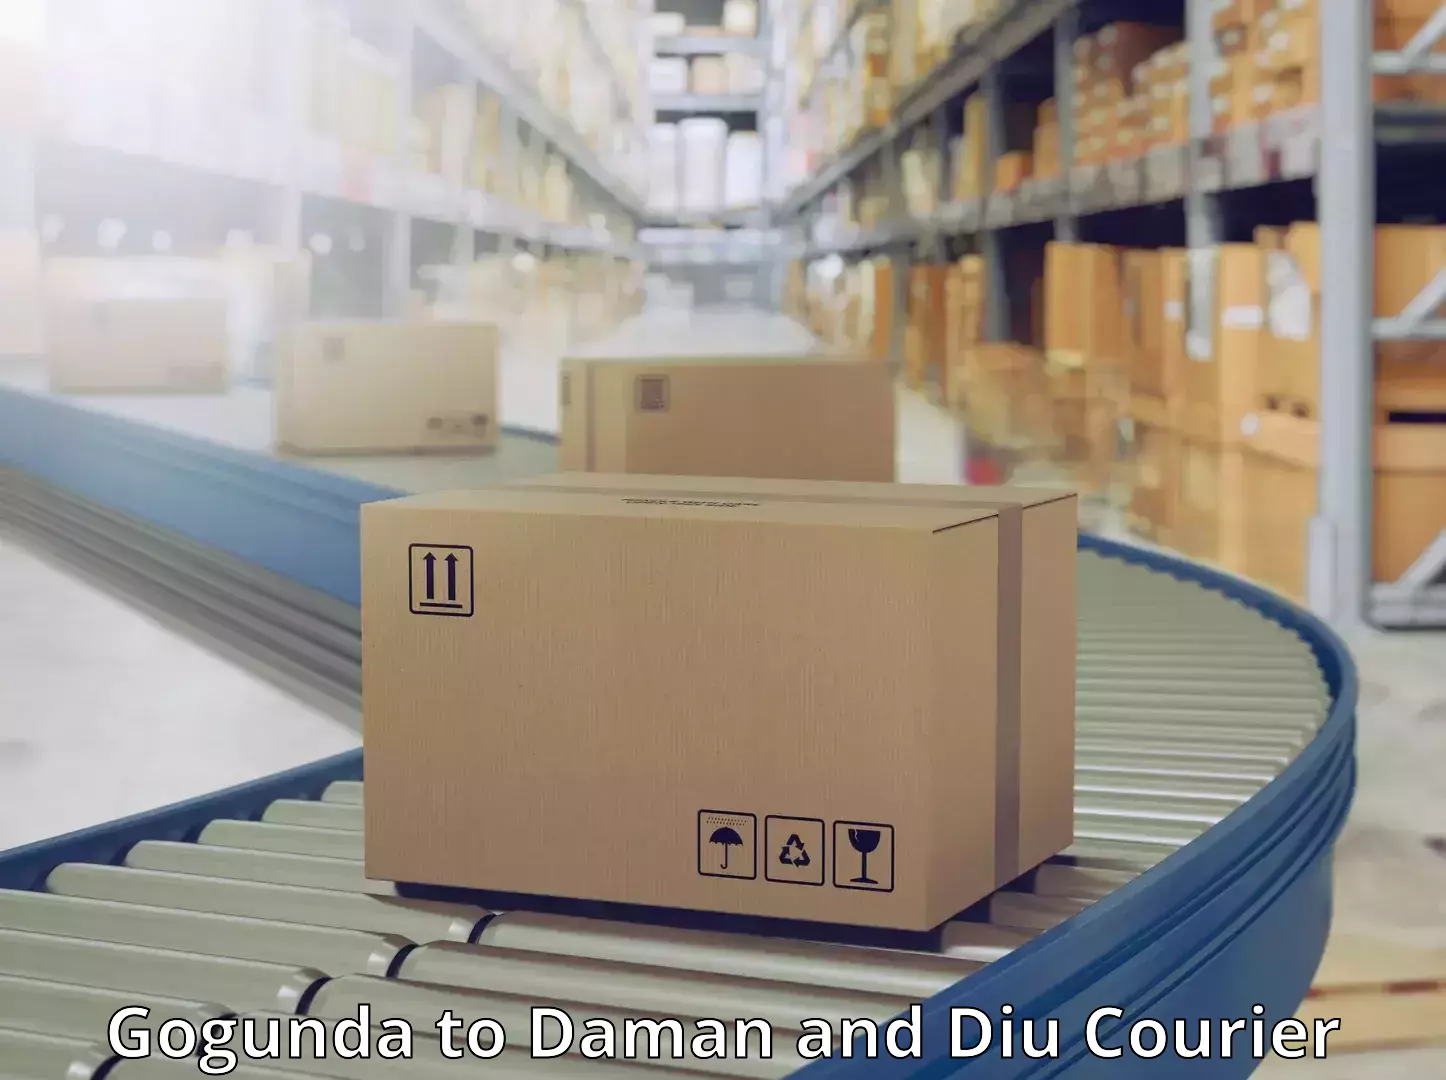 Business shipping needs Gogunda to Daman and Diu